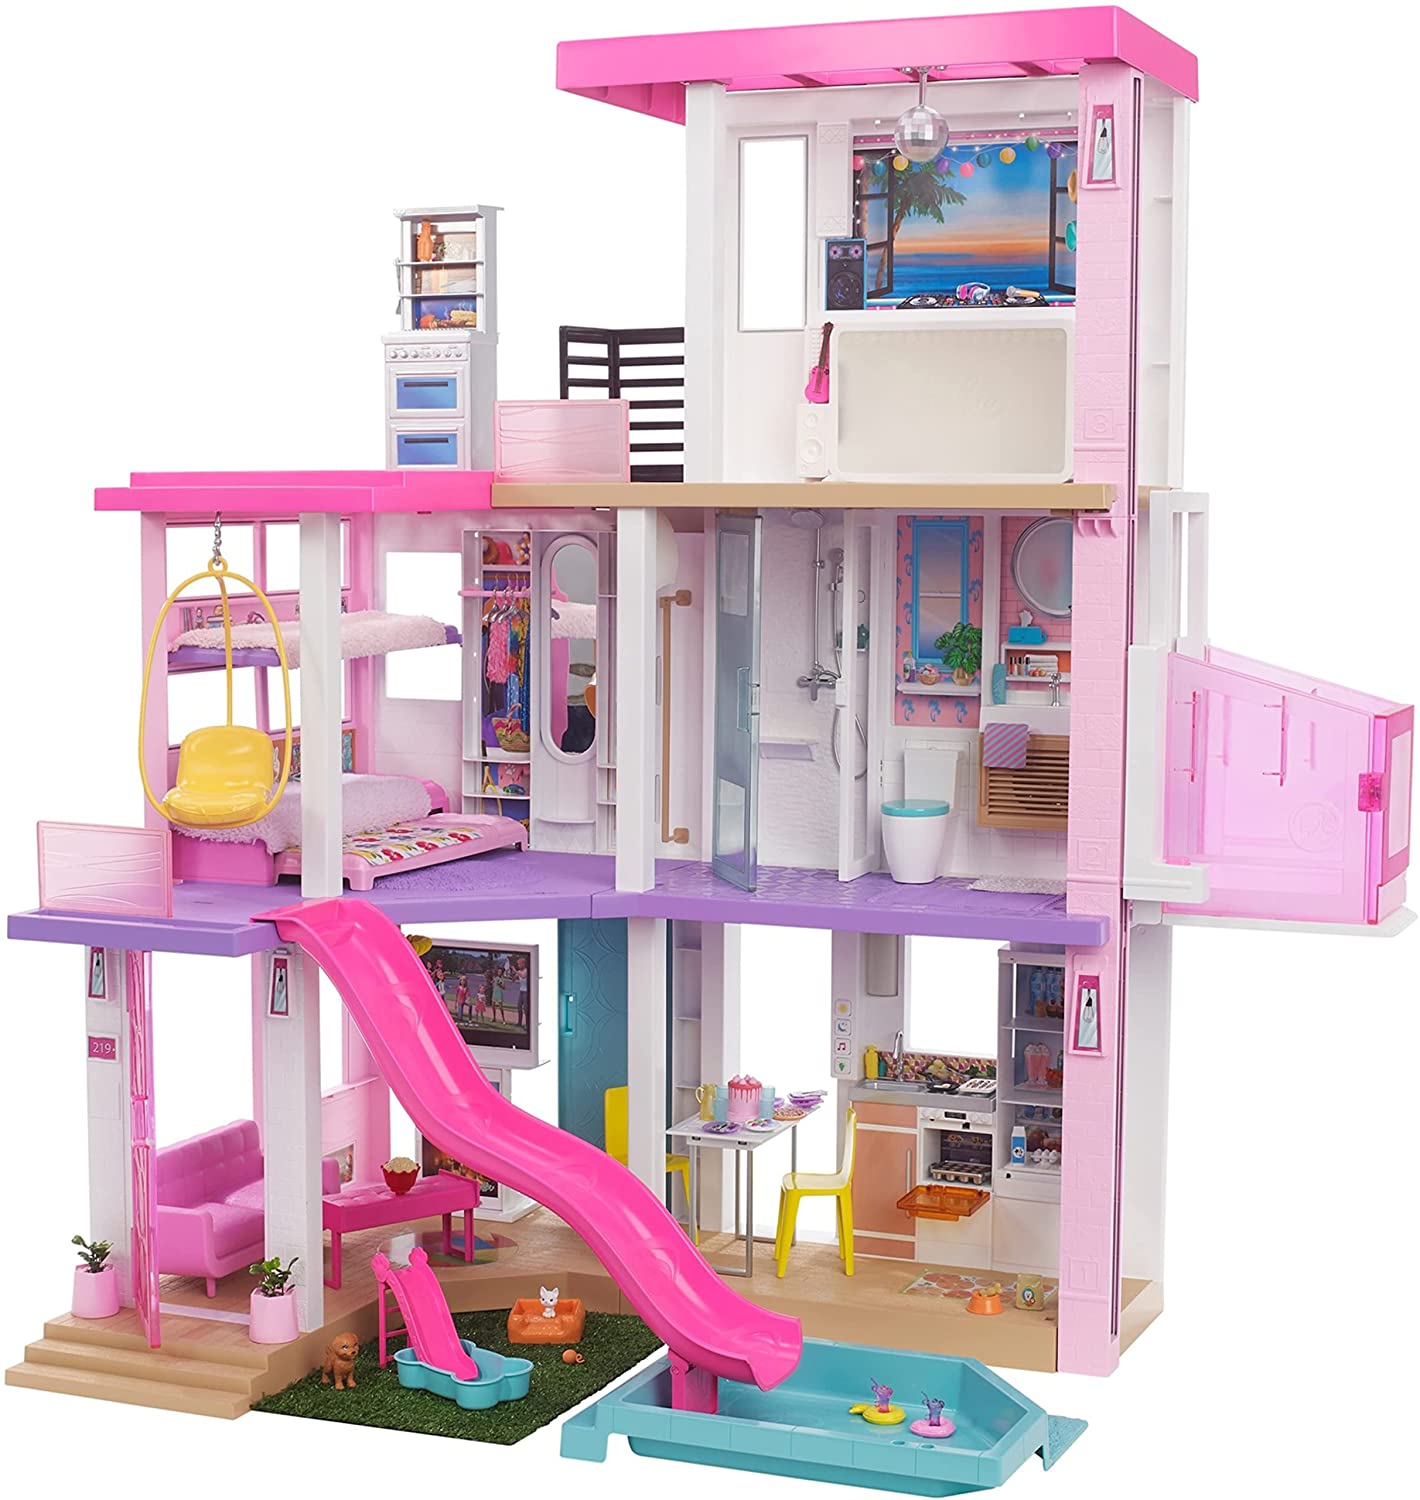 Barbie Dreamhouse Markdown on Amazon!!